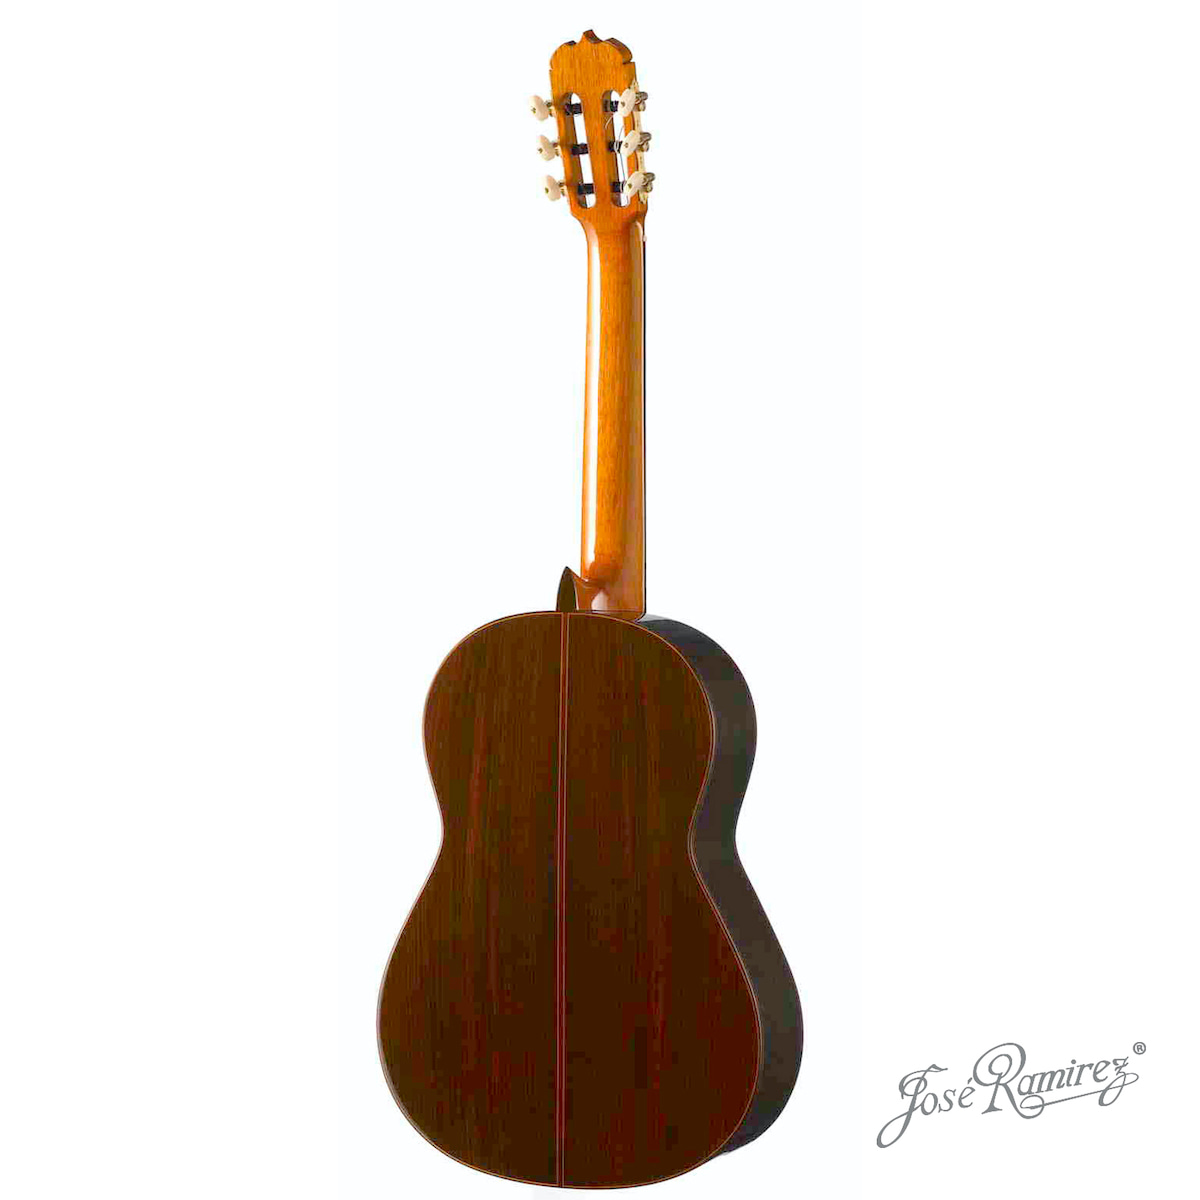 Suelo de la guitarra artesanal Tradicional Serranito